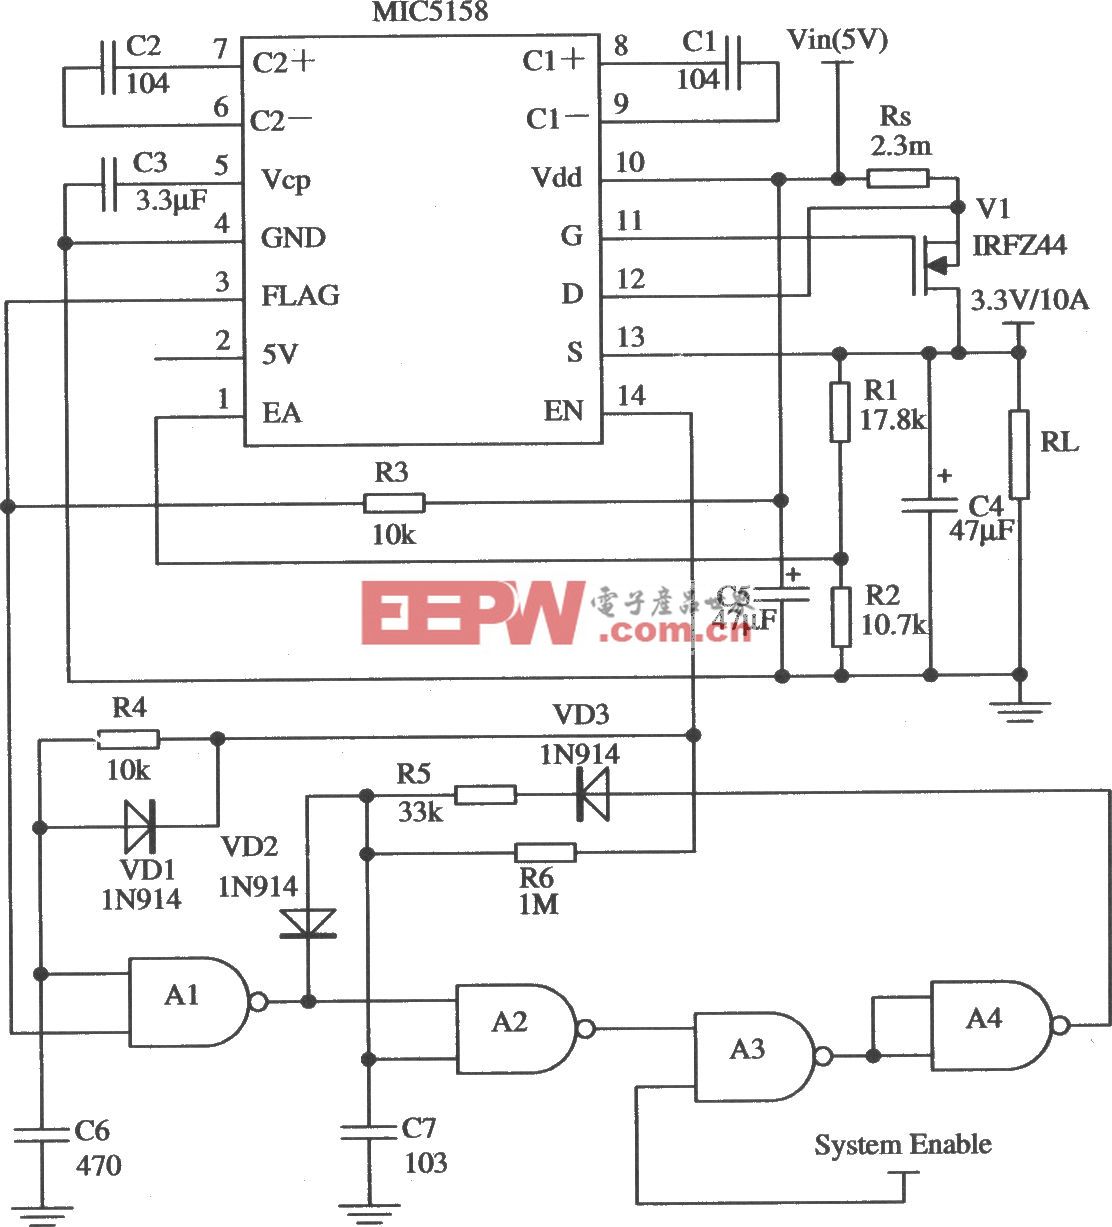 由MIC5158与一些其他器件构成的5V输入、3.3V／10A输出并且具有短路保护功能的线性稳压器电路